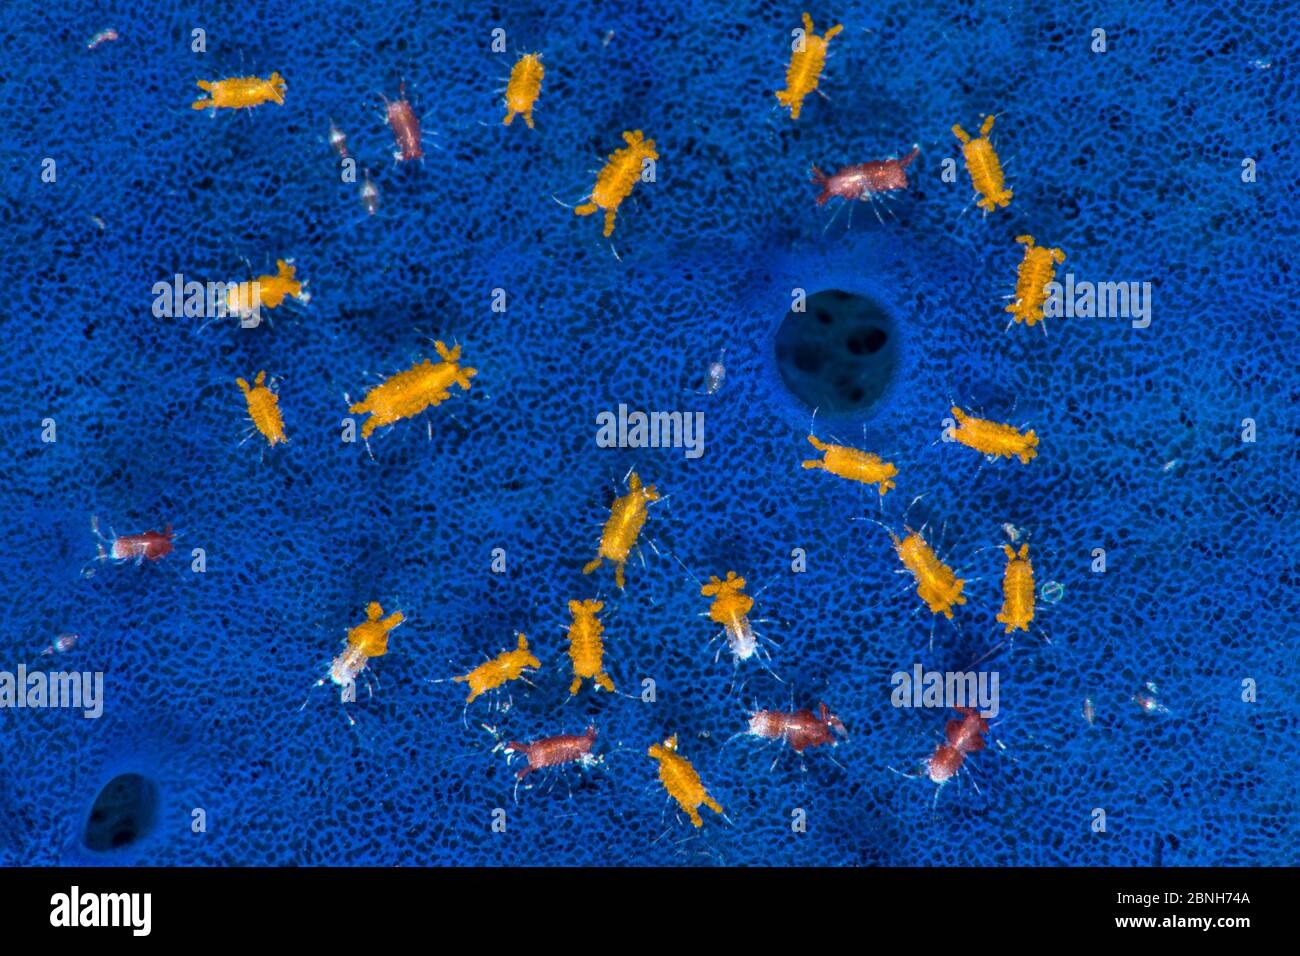 Aggregation von winzigen Isopoden (Santia sp.), die auf der Oberfläche eines blauen Schwamms (Halicrona sp.) leben, gibt es hier zwei Farbvarianten, möglicherweise differe Stockfoto